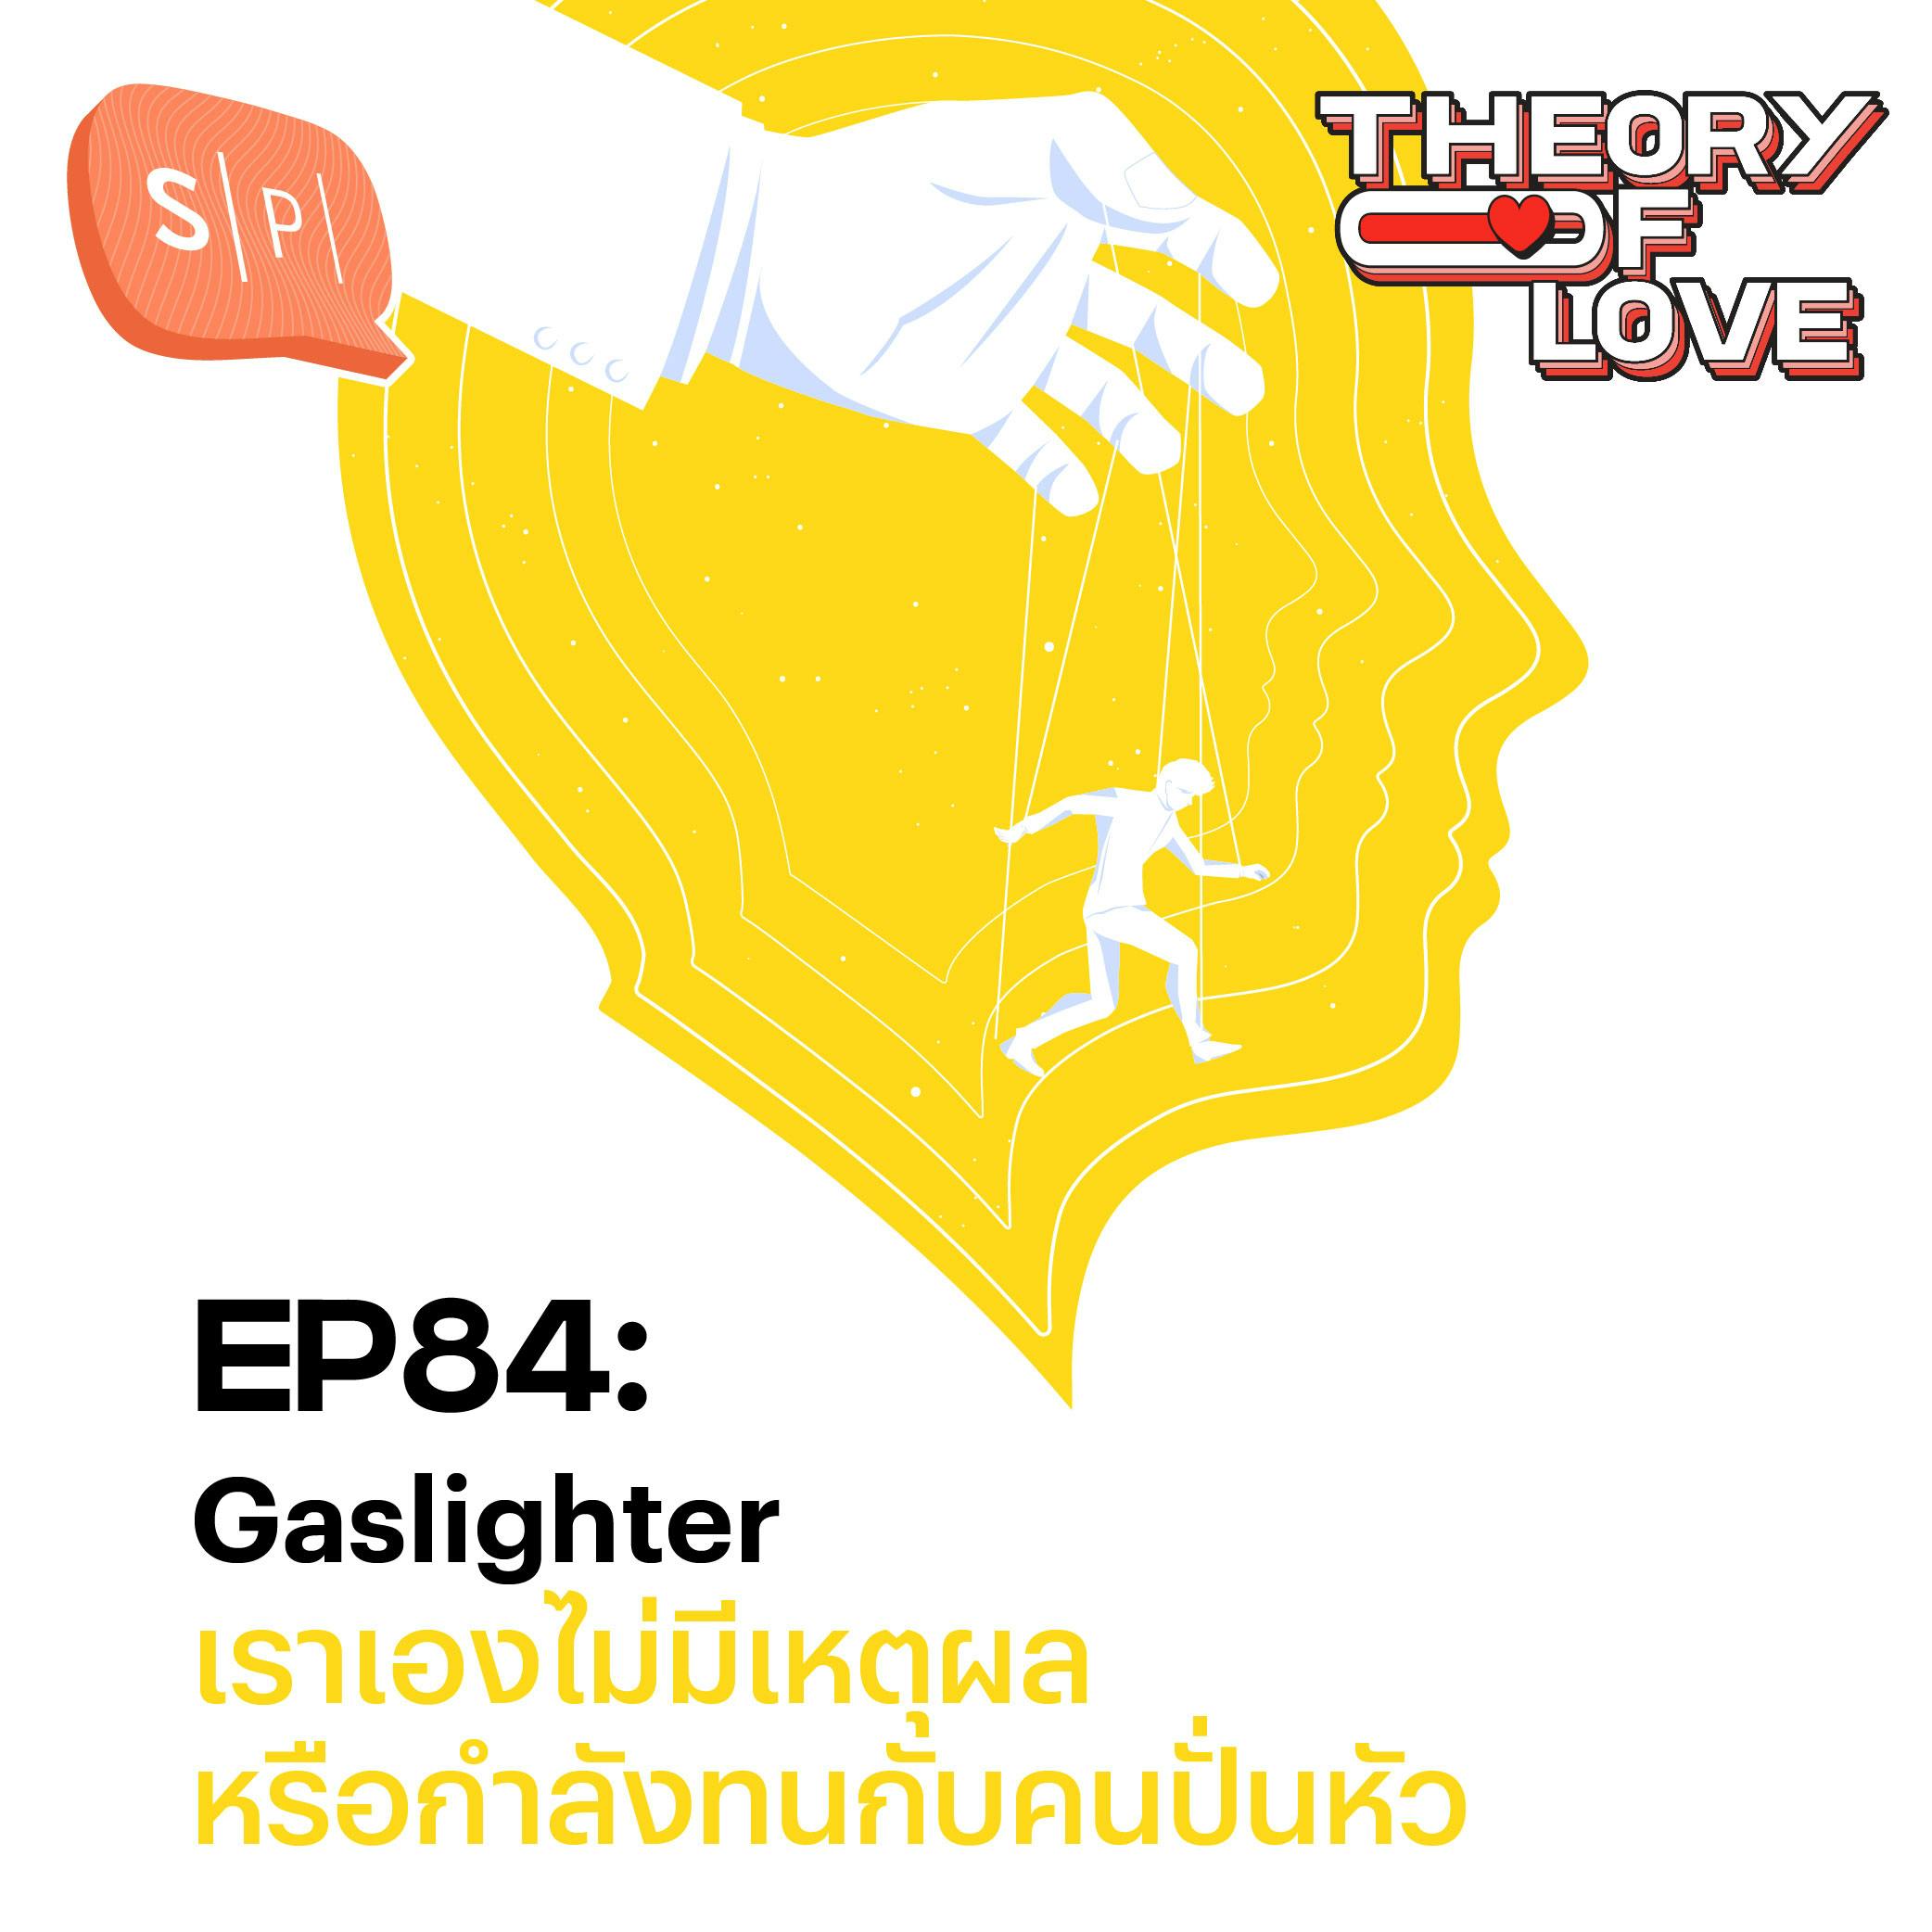 Gaslighter เราเองไม่มีเหตุผล หรือกำลังทนกับคนปั่นหัว | EP84